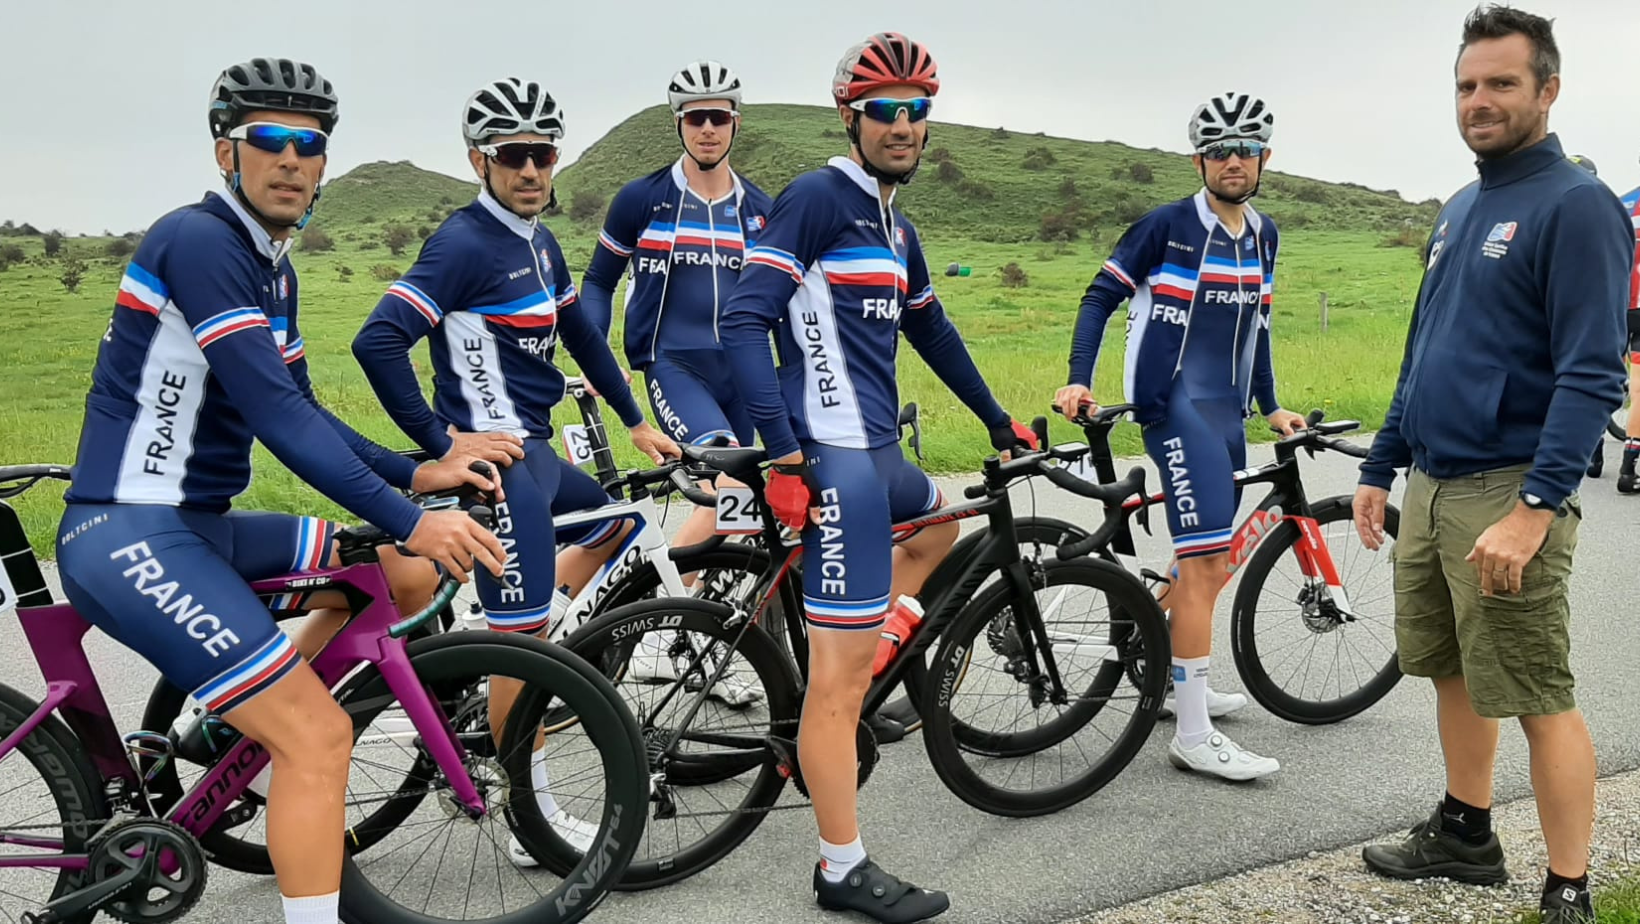 Belle performance pour la délégation française à l'USIC de cyclisme